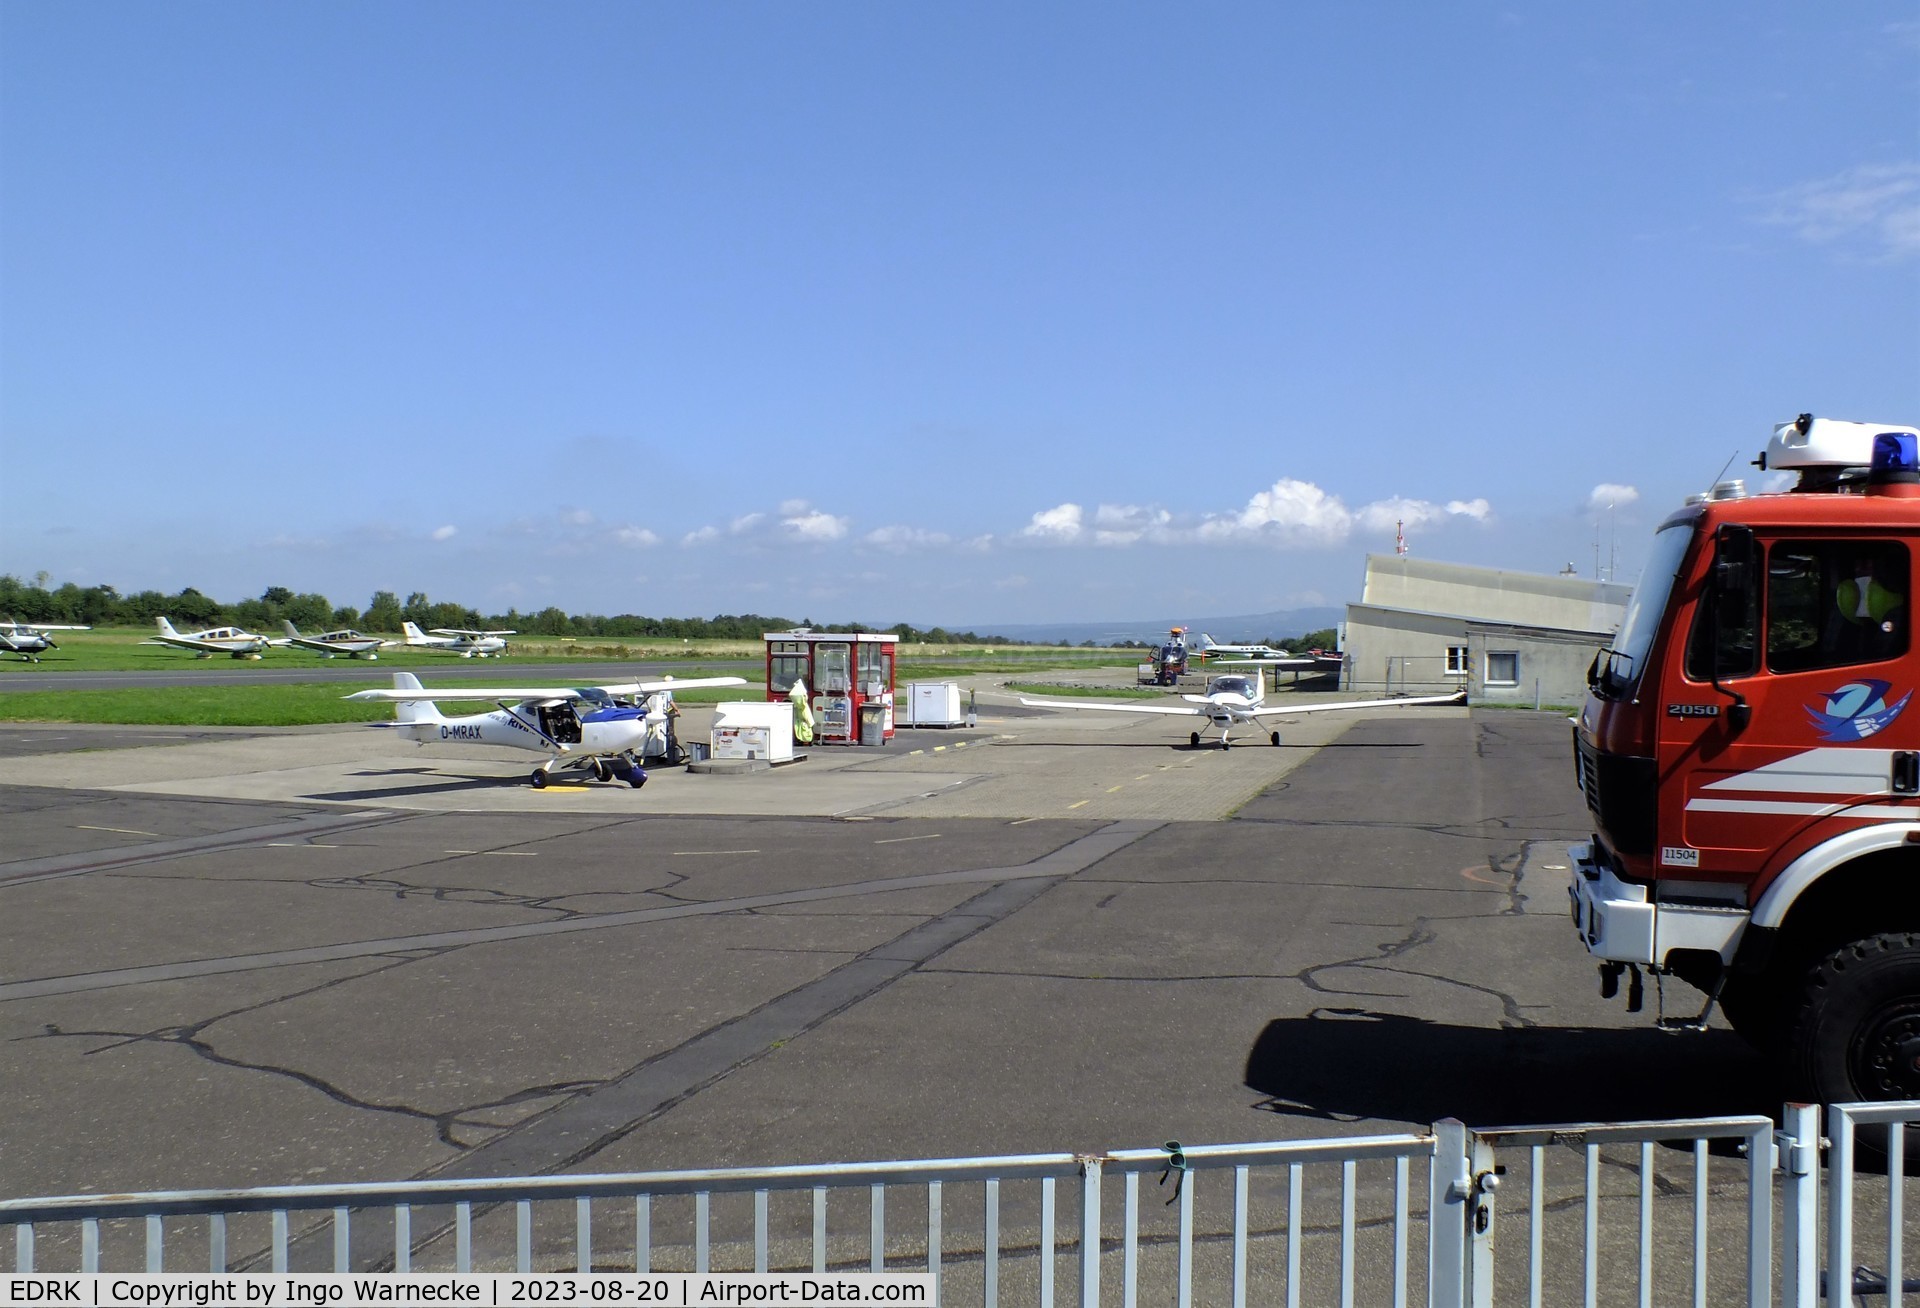 Koblenz Winningen Airport, Winningen, Mosel Germany (EDRK) - apron and visiting aicraft at Koblenz-Winningen airfield